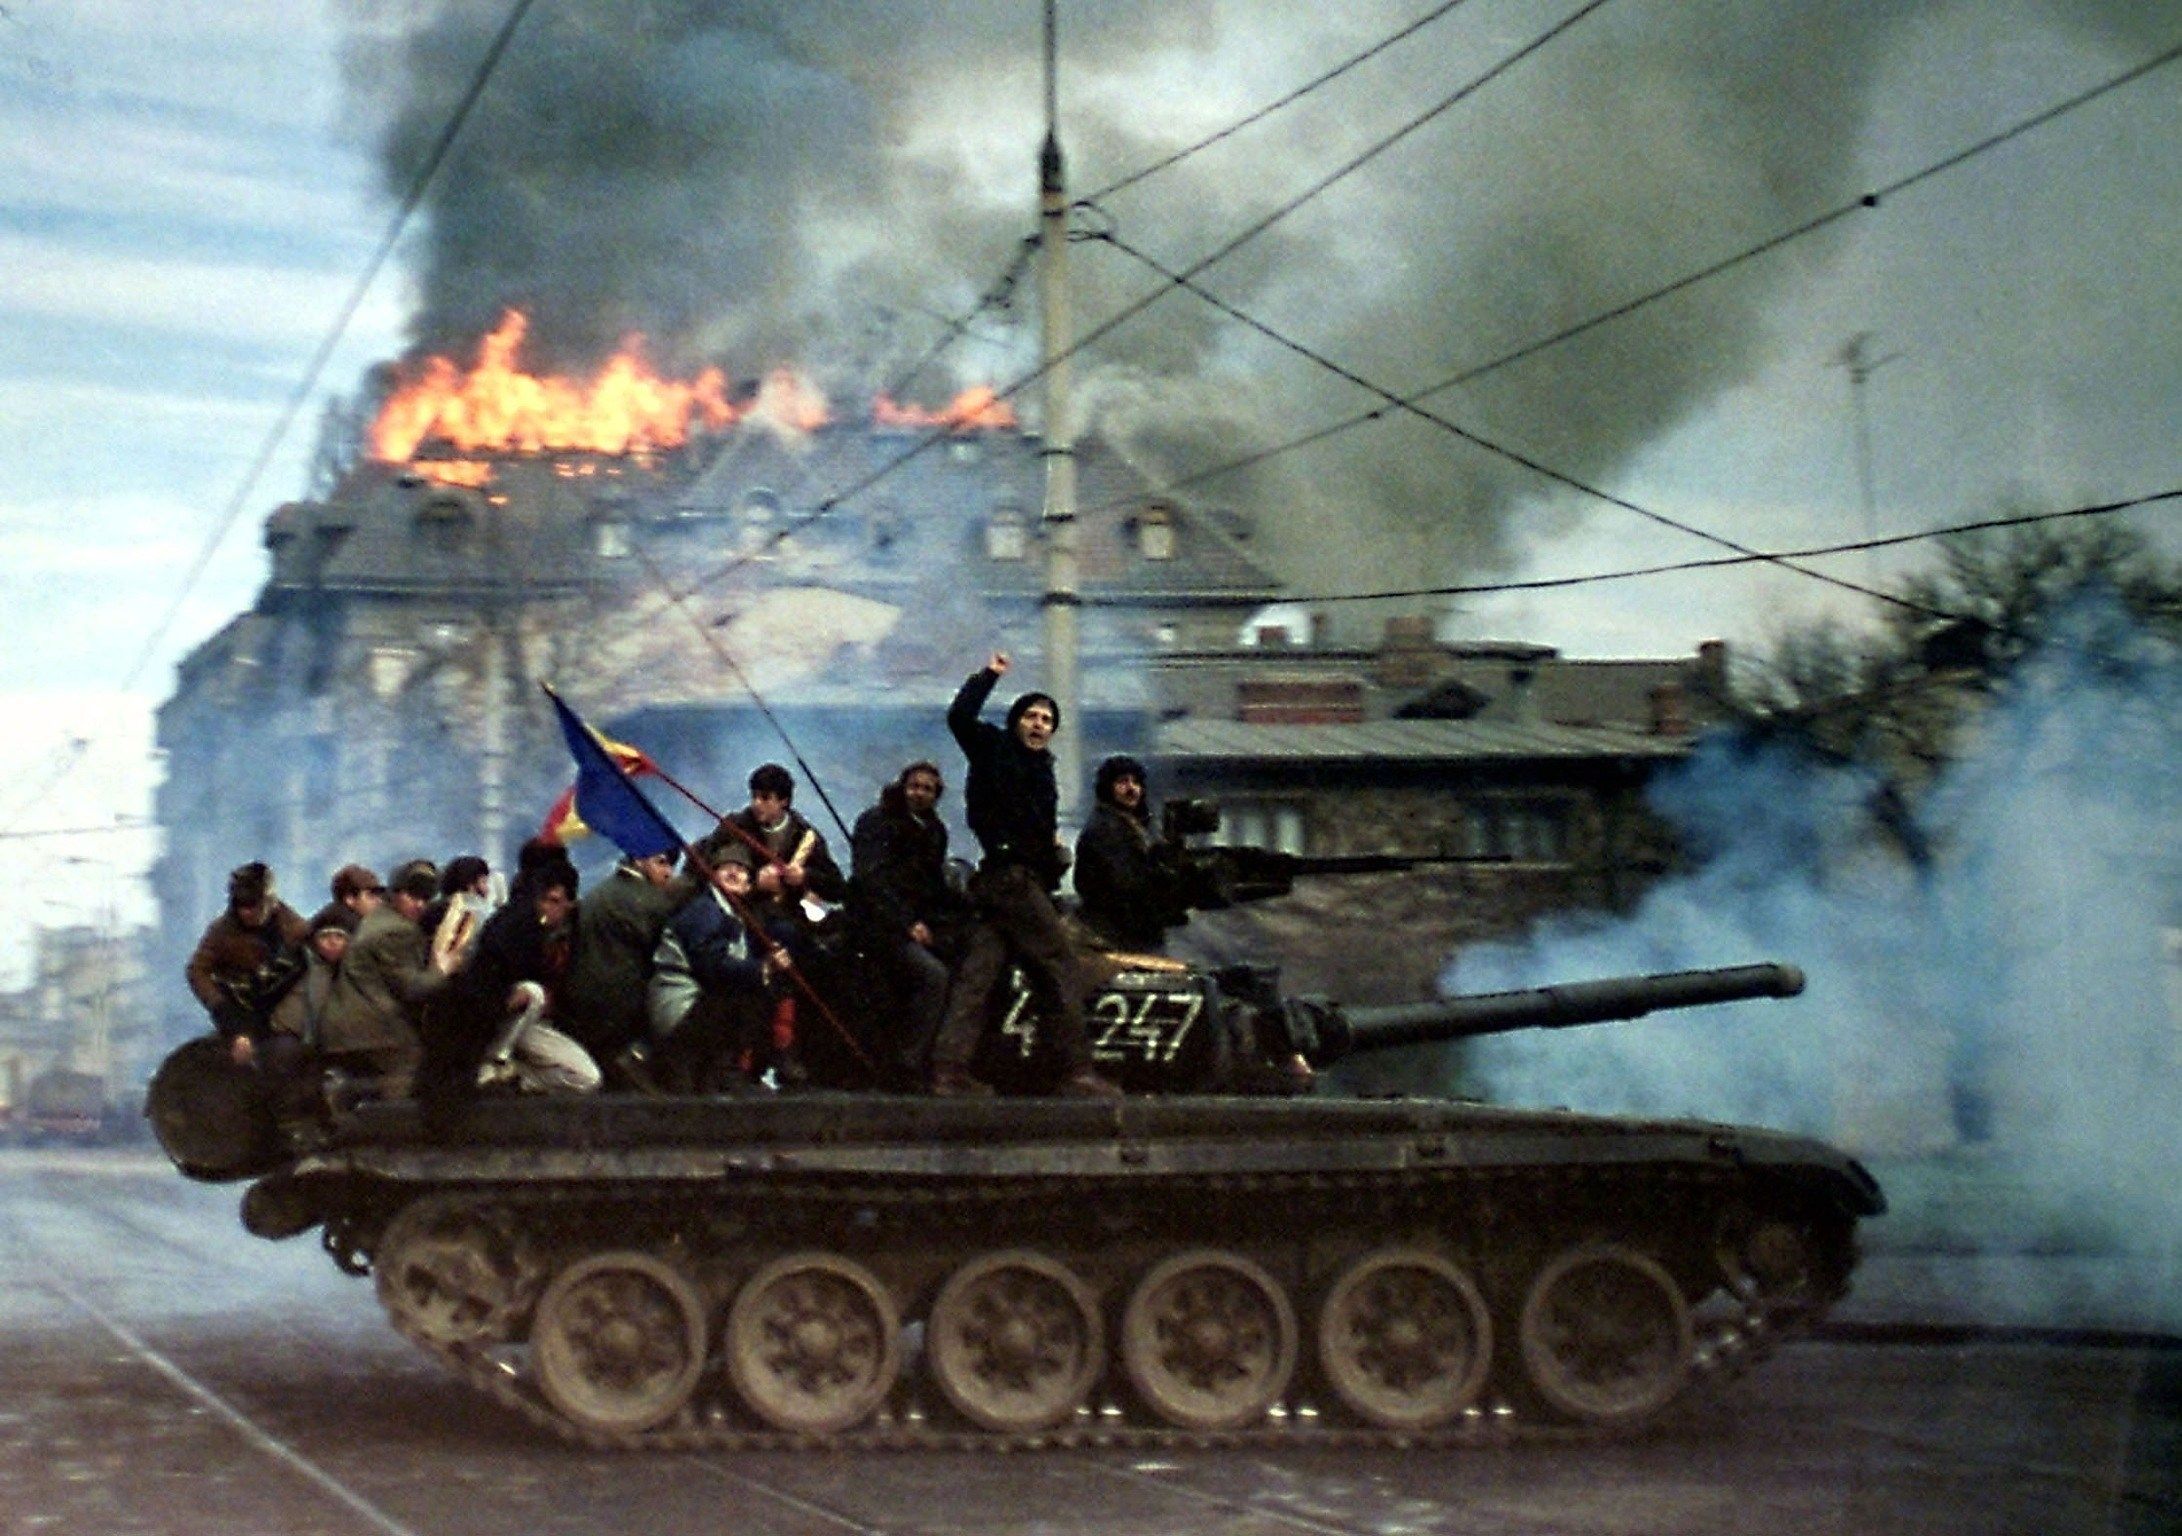 Демонстранты на танке Т-72 на фоне горящего здания во время Румынской революции, Бухарест, декабрь 1989 г.